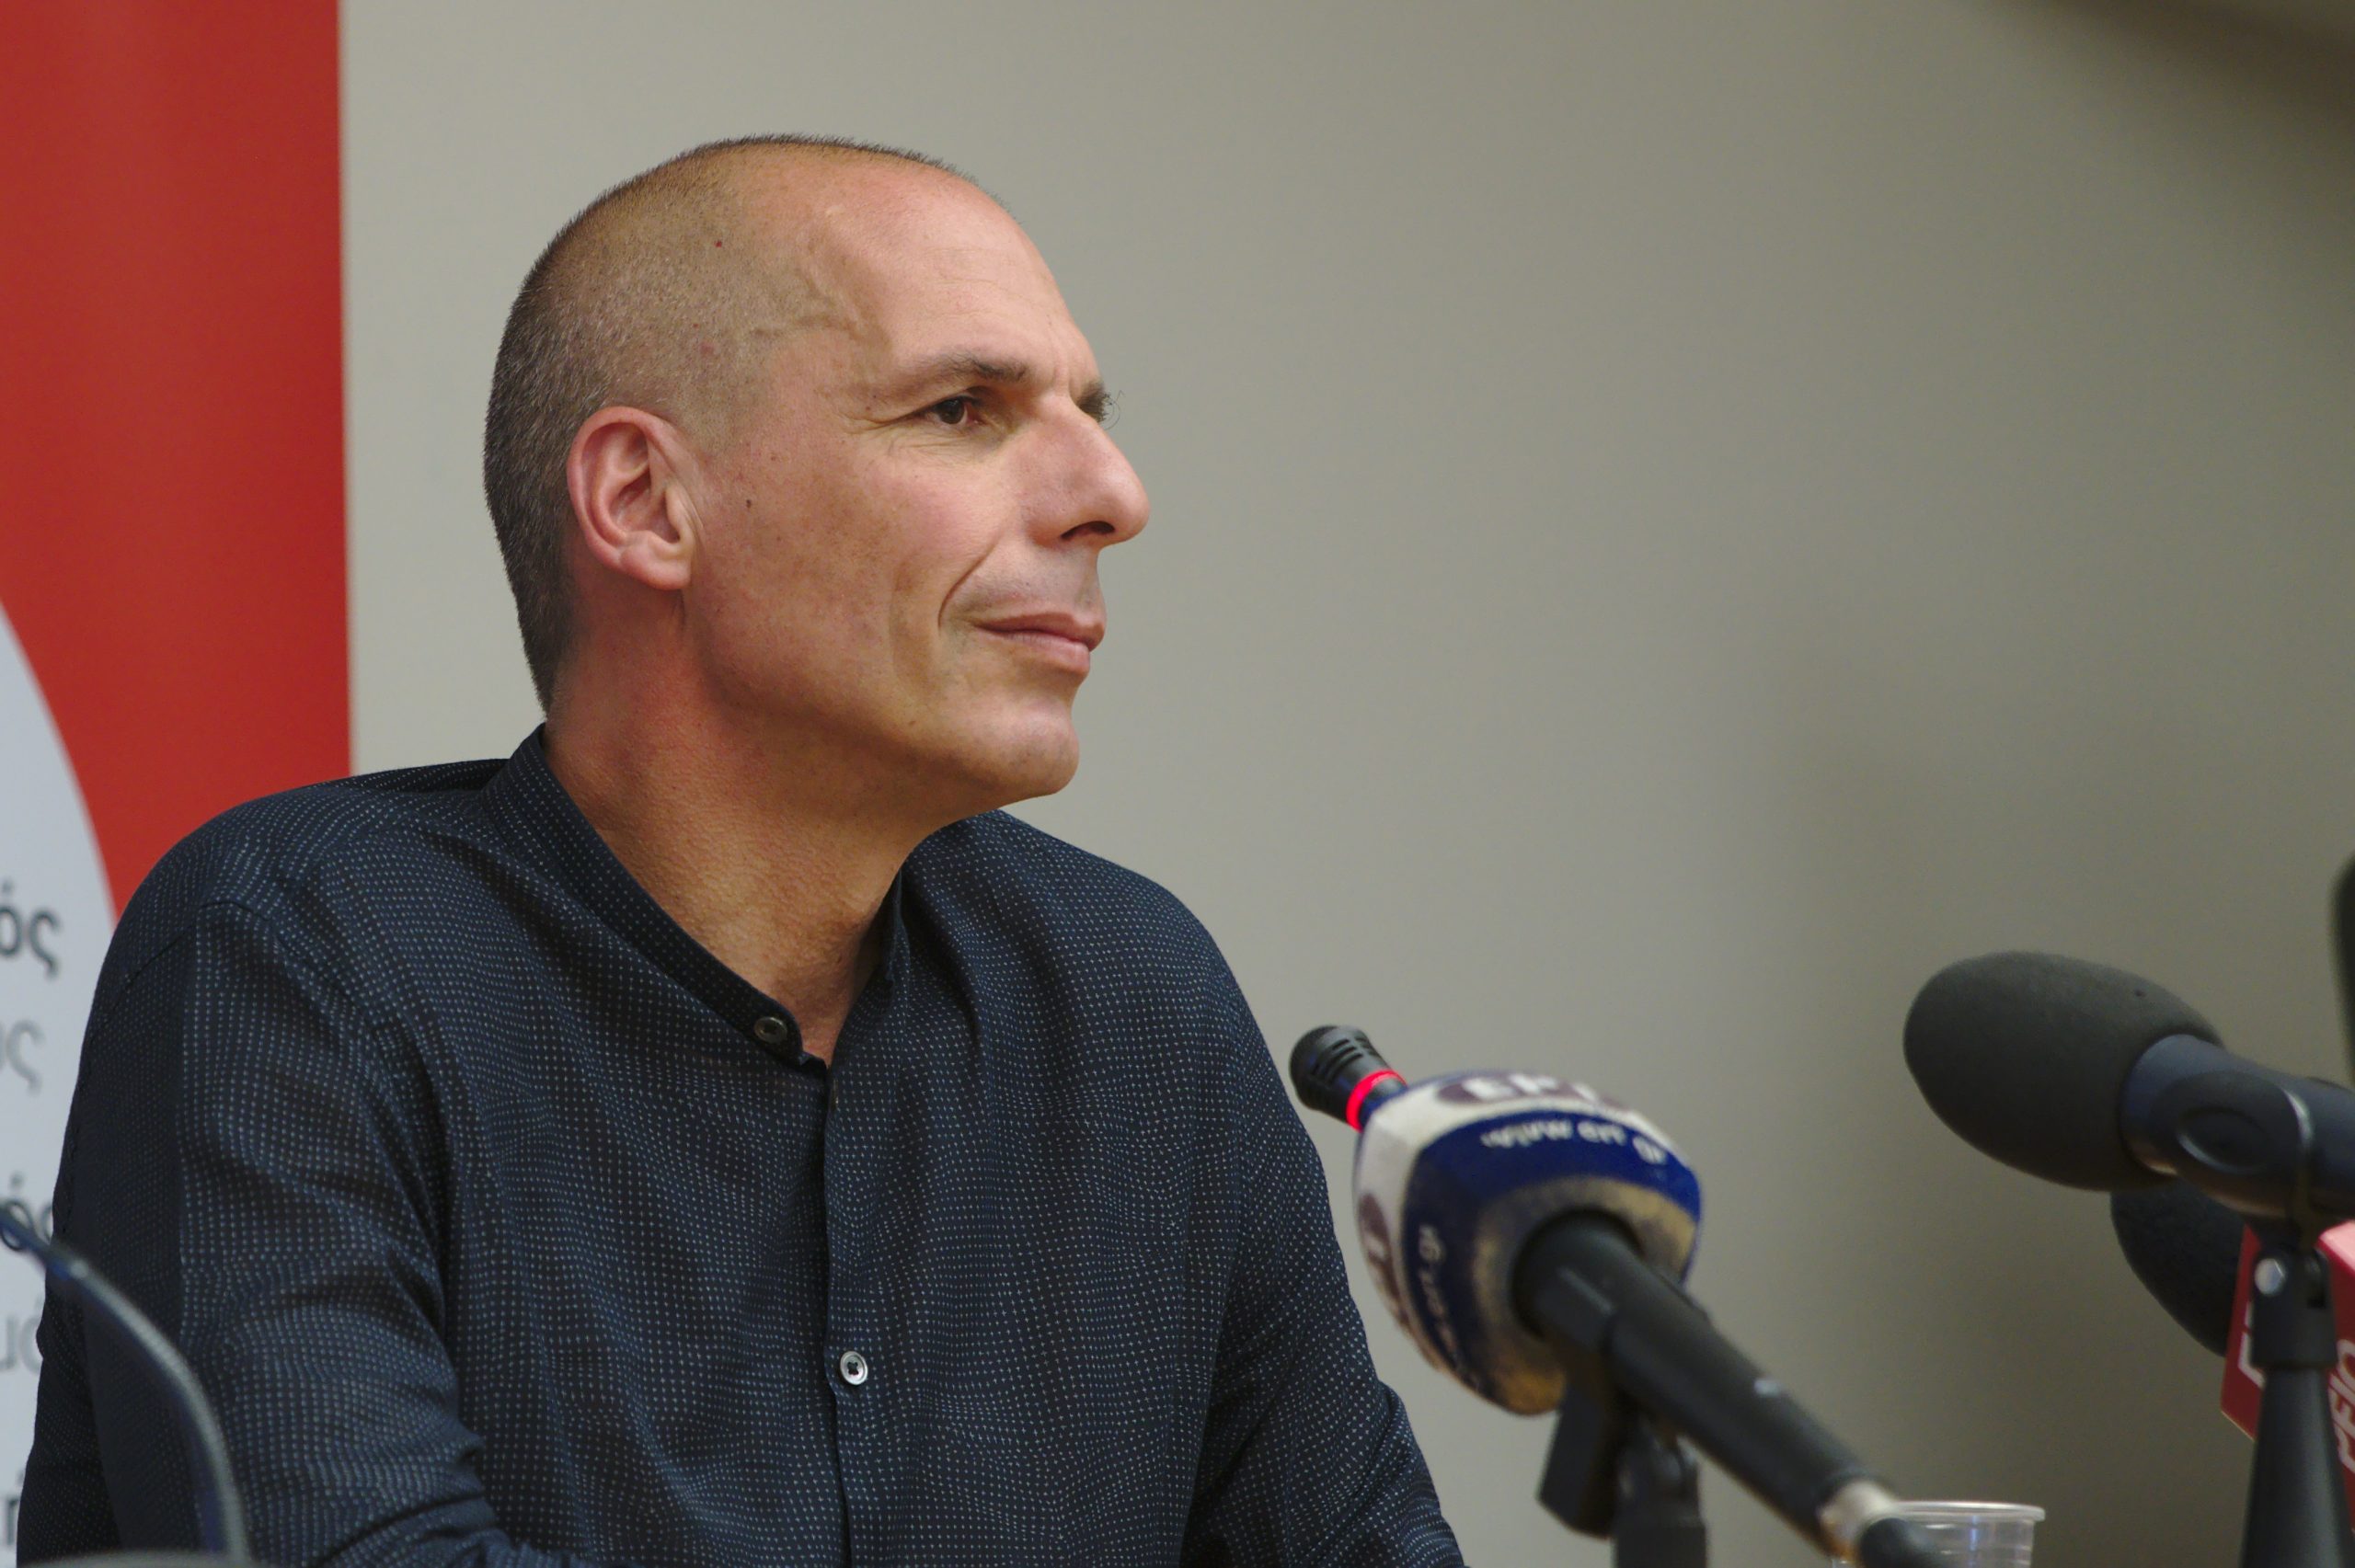 Varoufakis "austerity". Varoufakis.